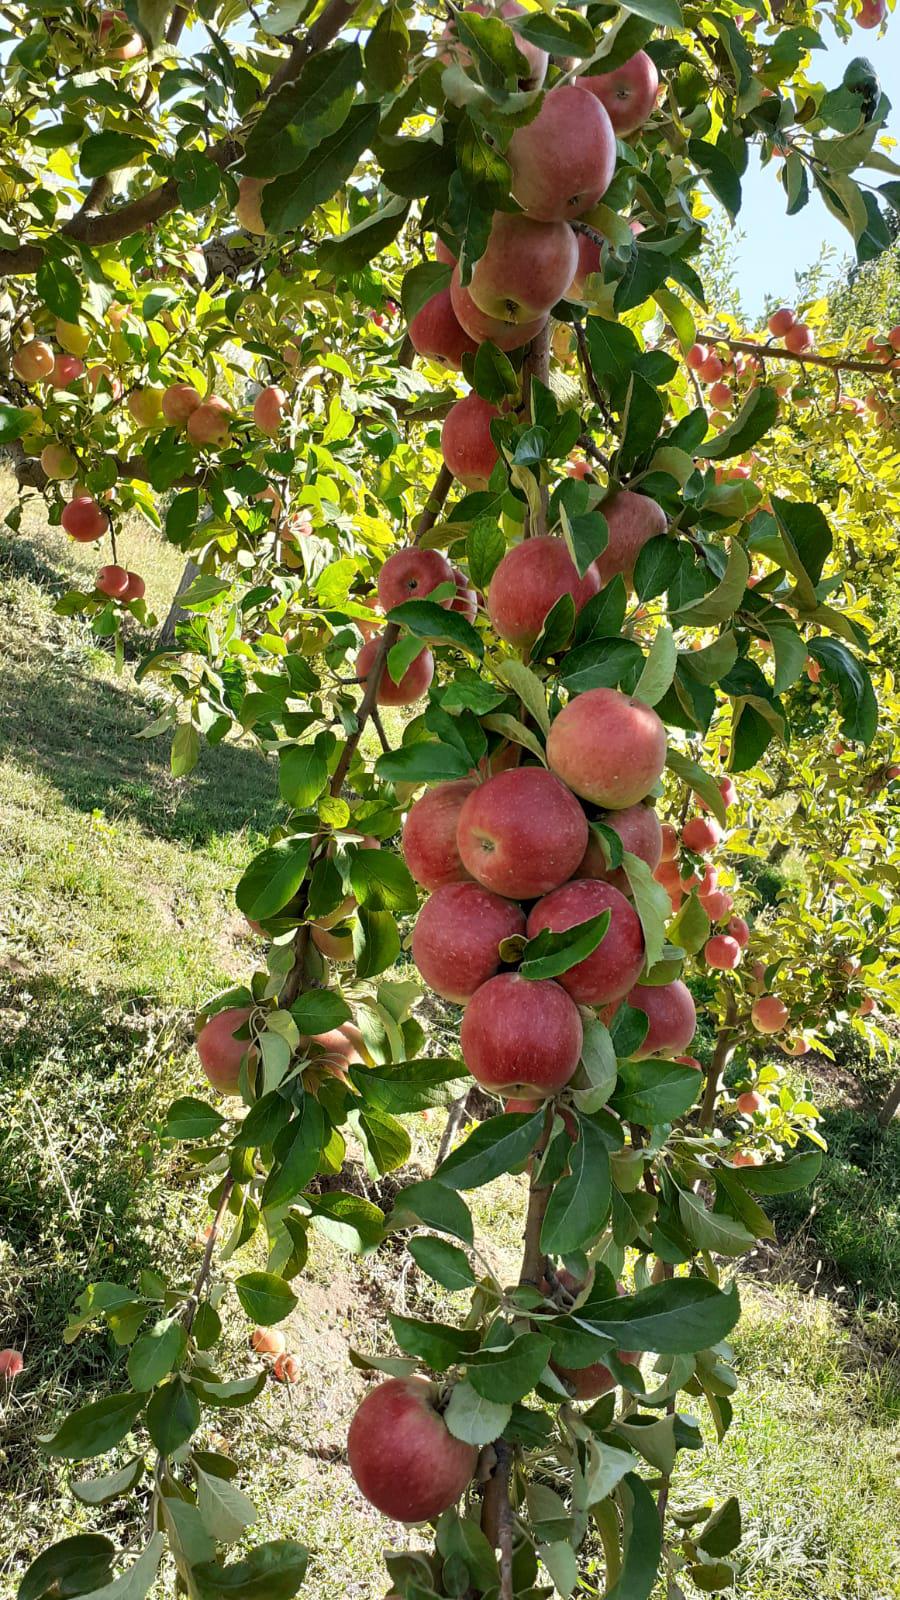 Elma - Muammer Ince tarafından verilen satılık elma ilanını ve diğer satılık elma ilanlarını tarimziraat.com adresinde bulabilirsiniz